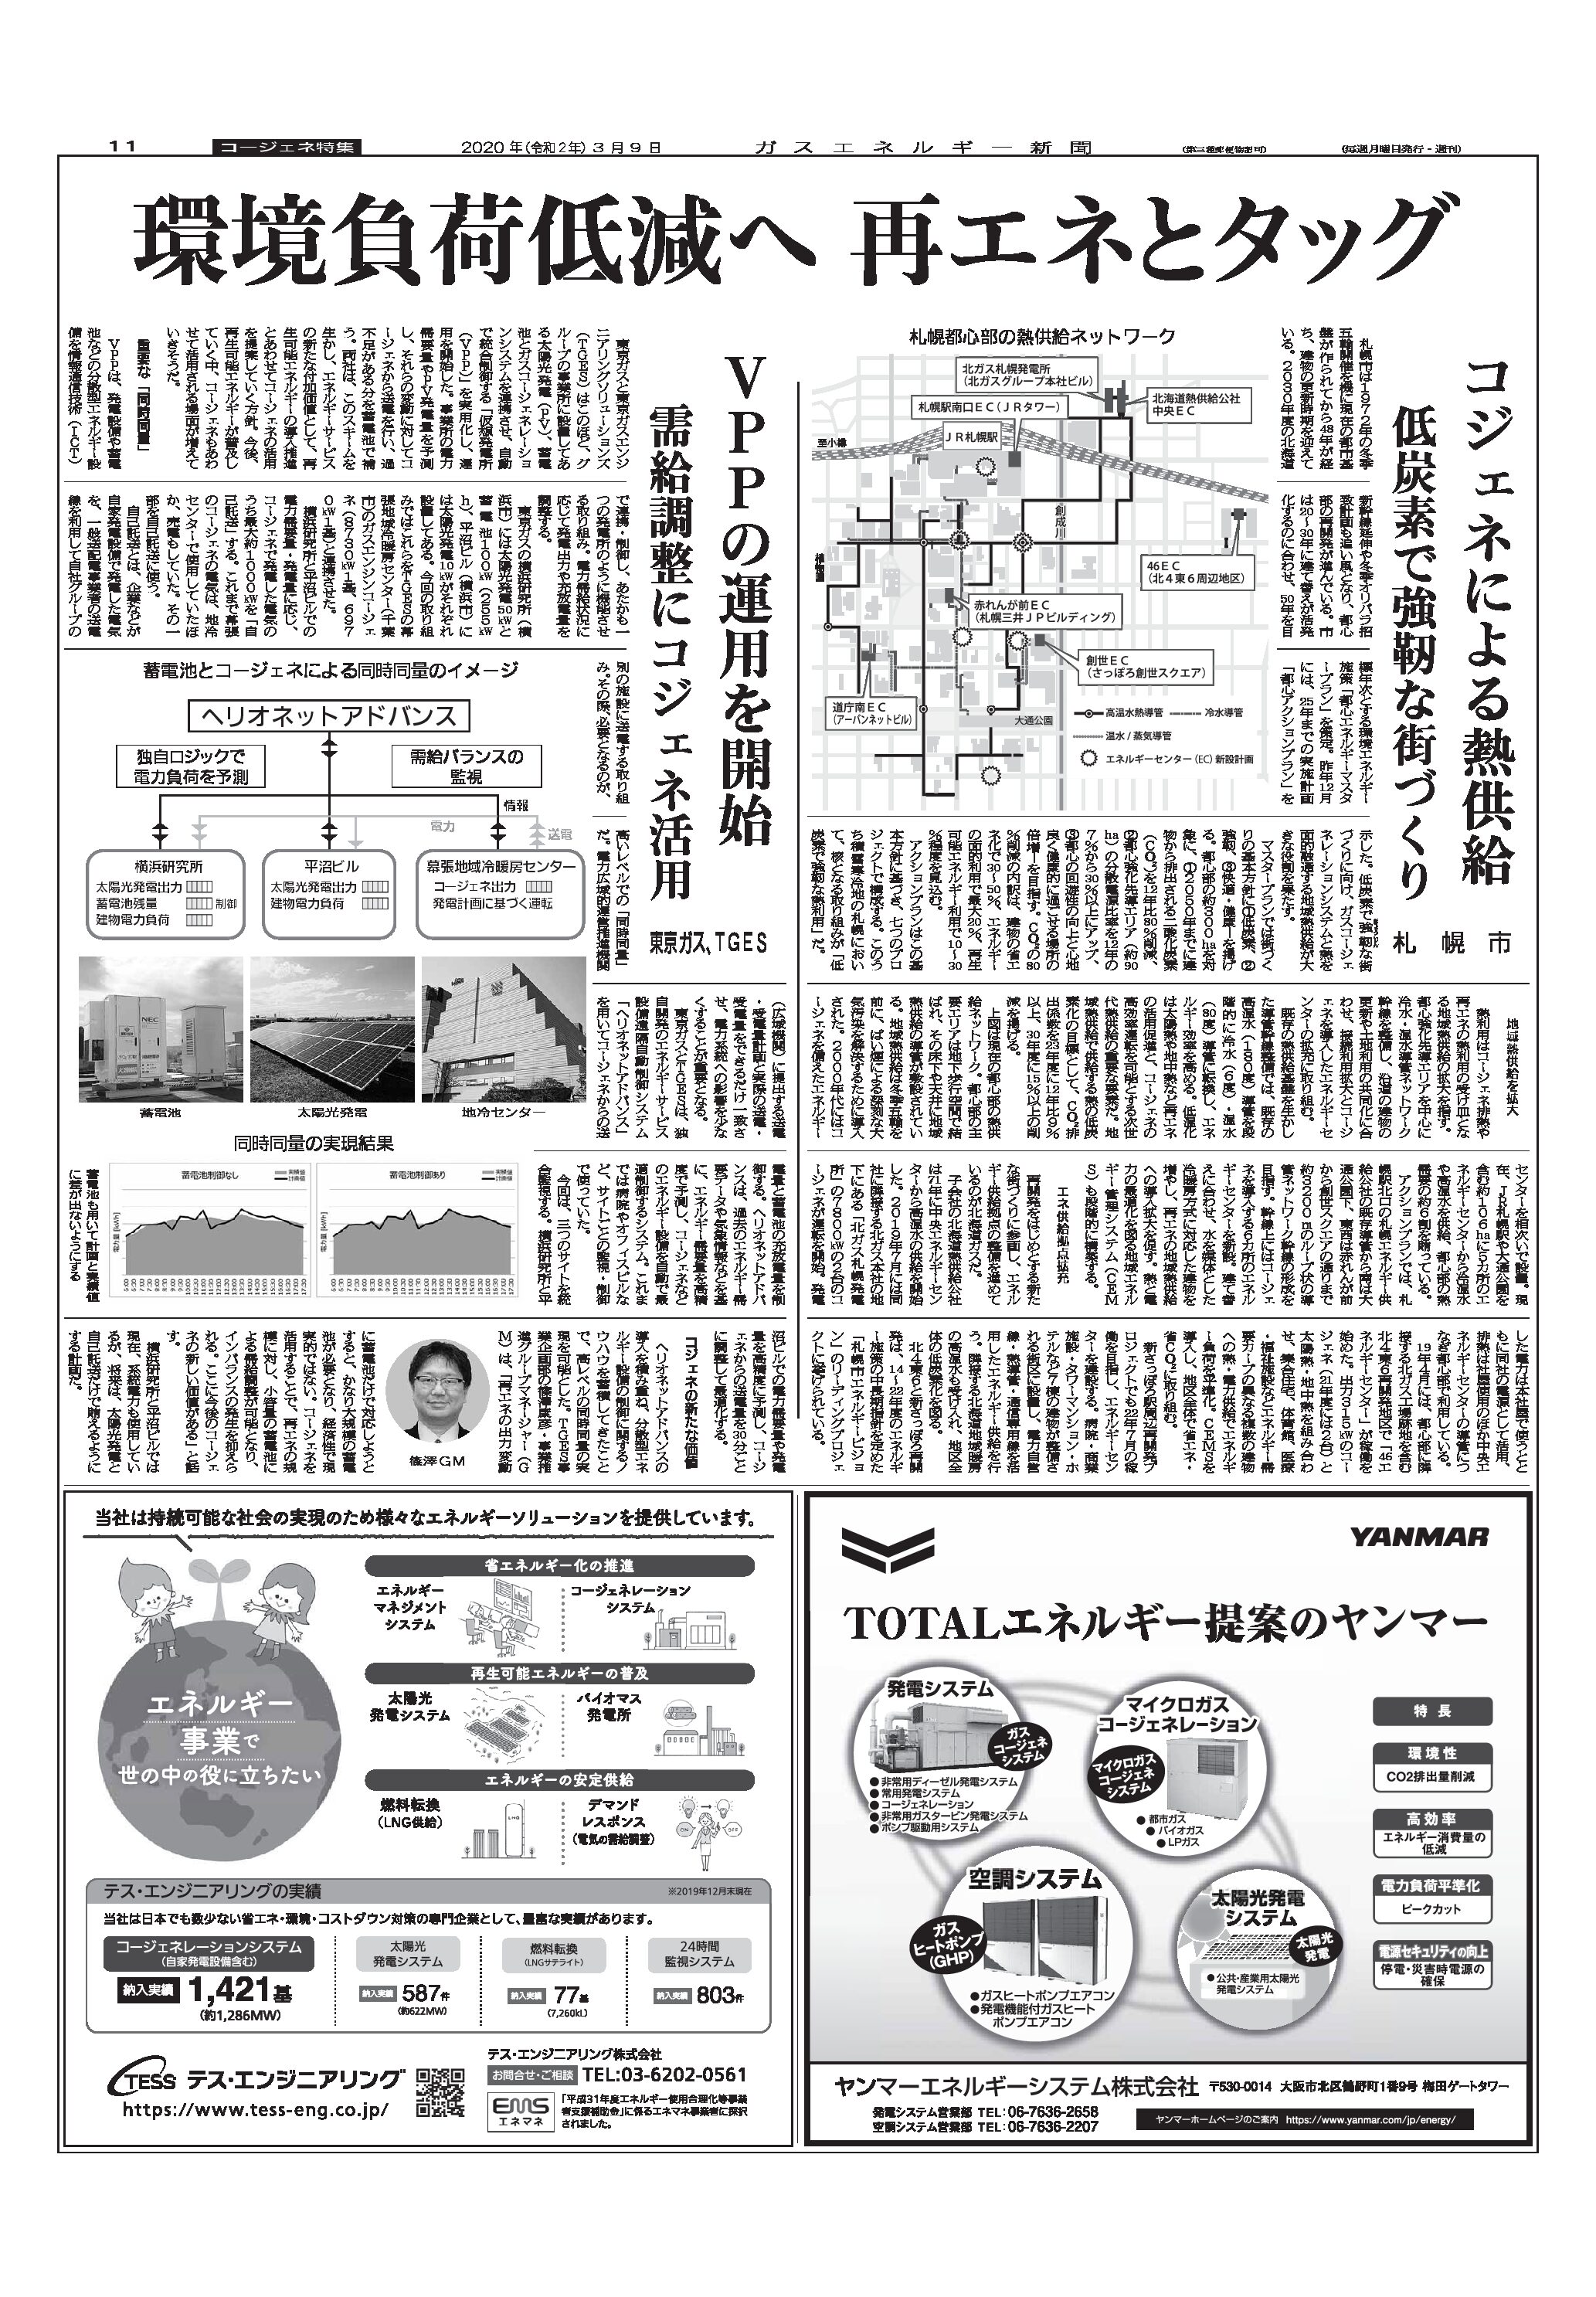 【コージェネ特集】VPPの運用を開始、需給調整にコジェネ活用/東京ガス、TGES